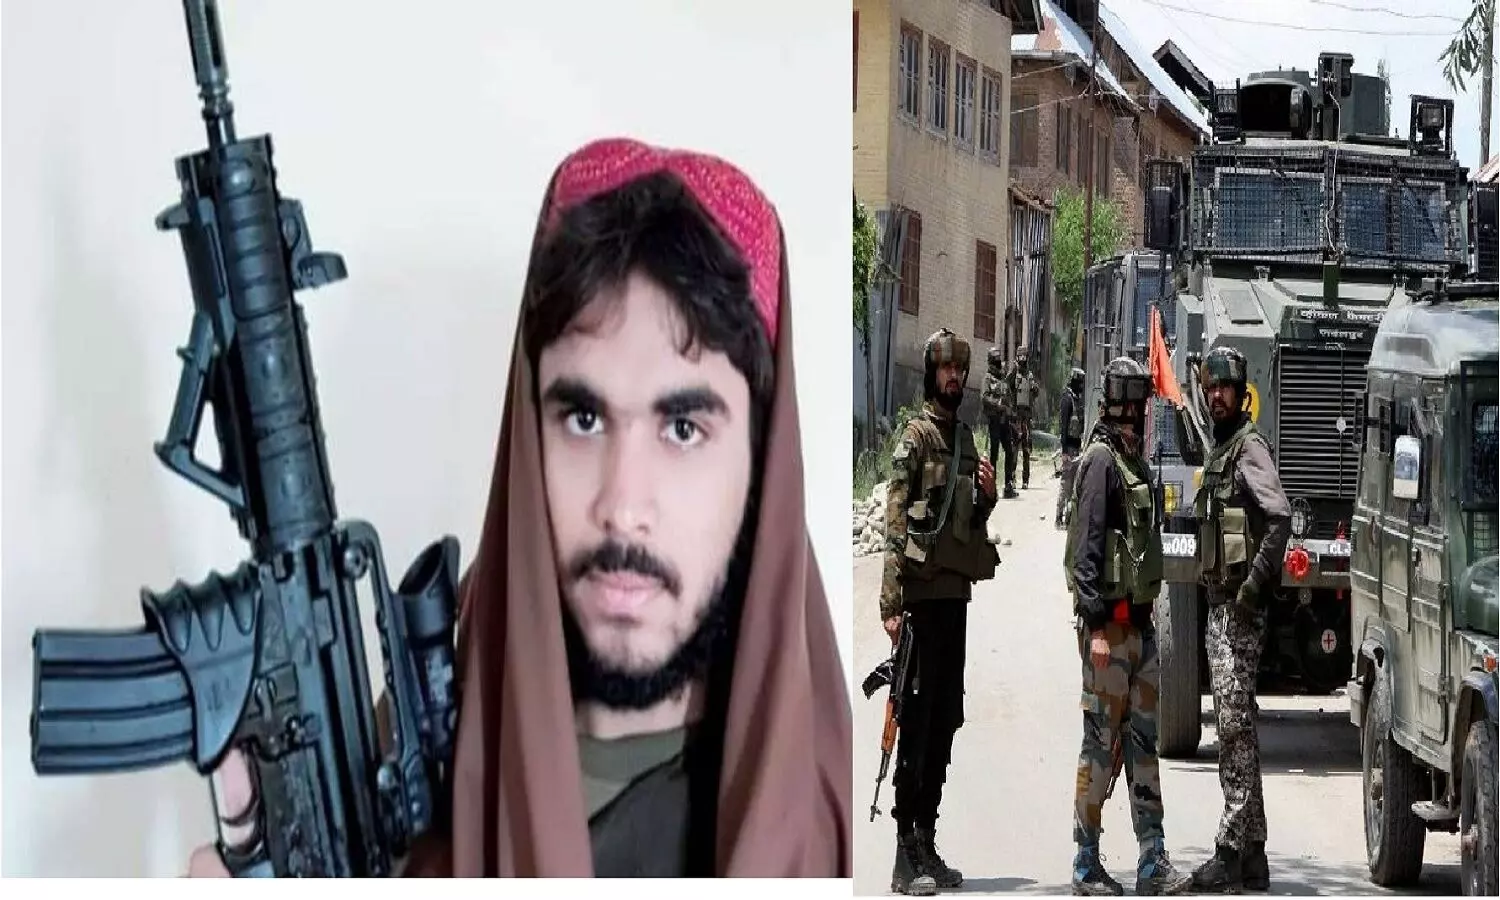 कश्मीर में लश्कर और जैश के 4 आतंकी ढेर, जैश का कमांडर मारा गया, एक जिन्दा पकड़ाया